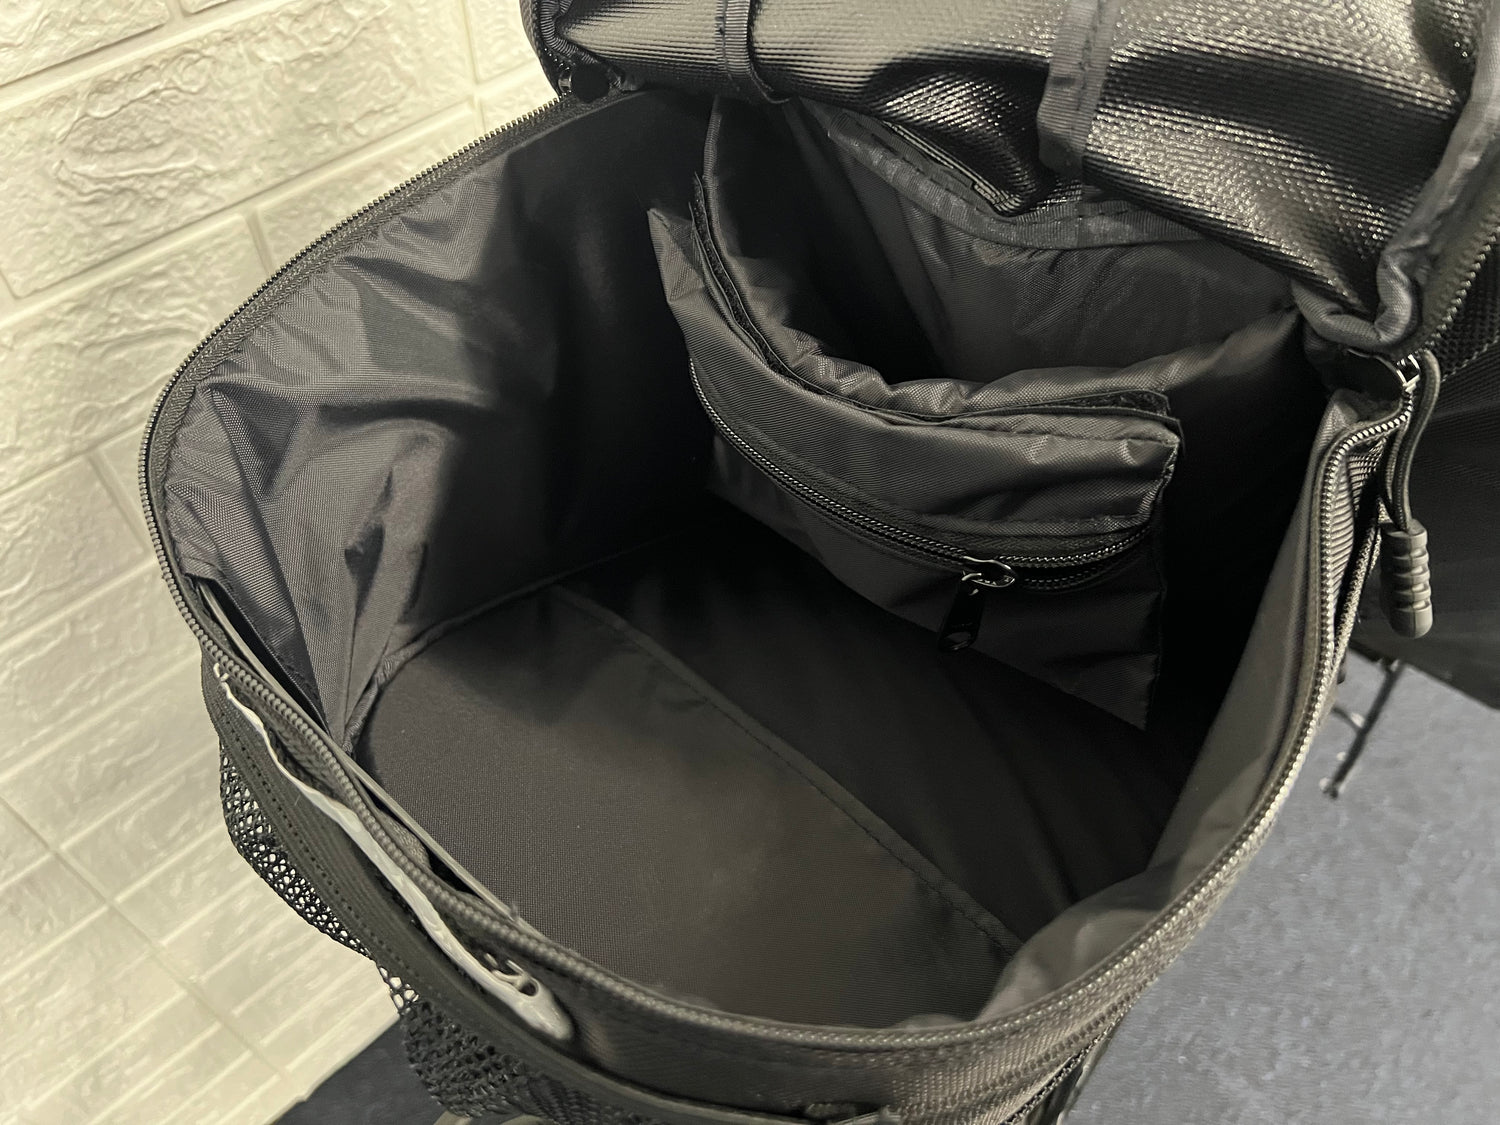 inside bacchetta bag